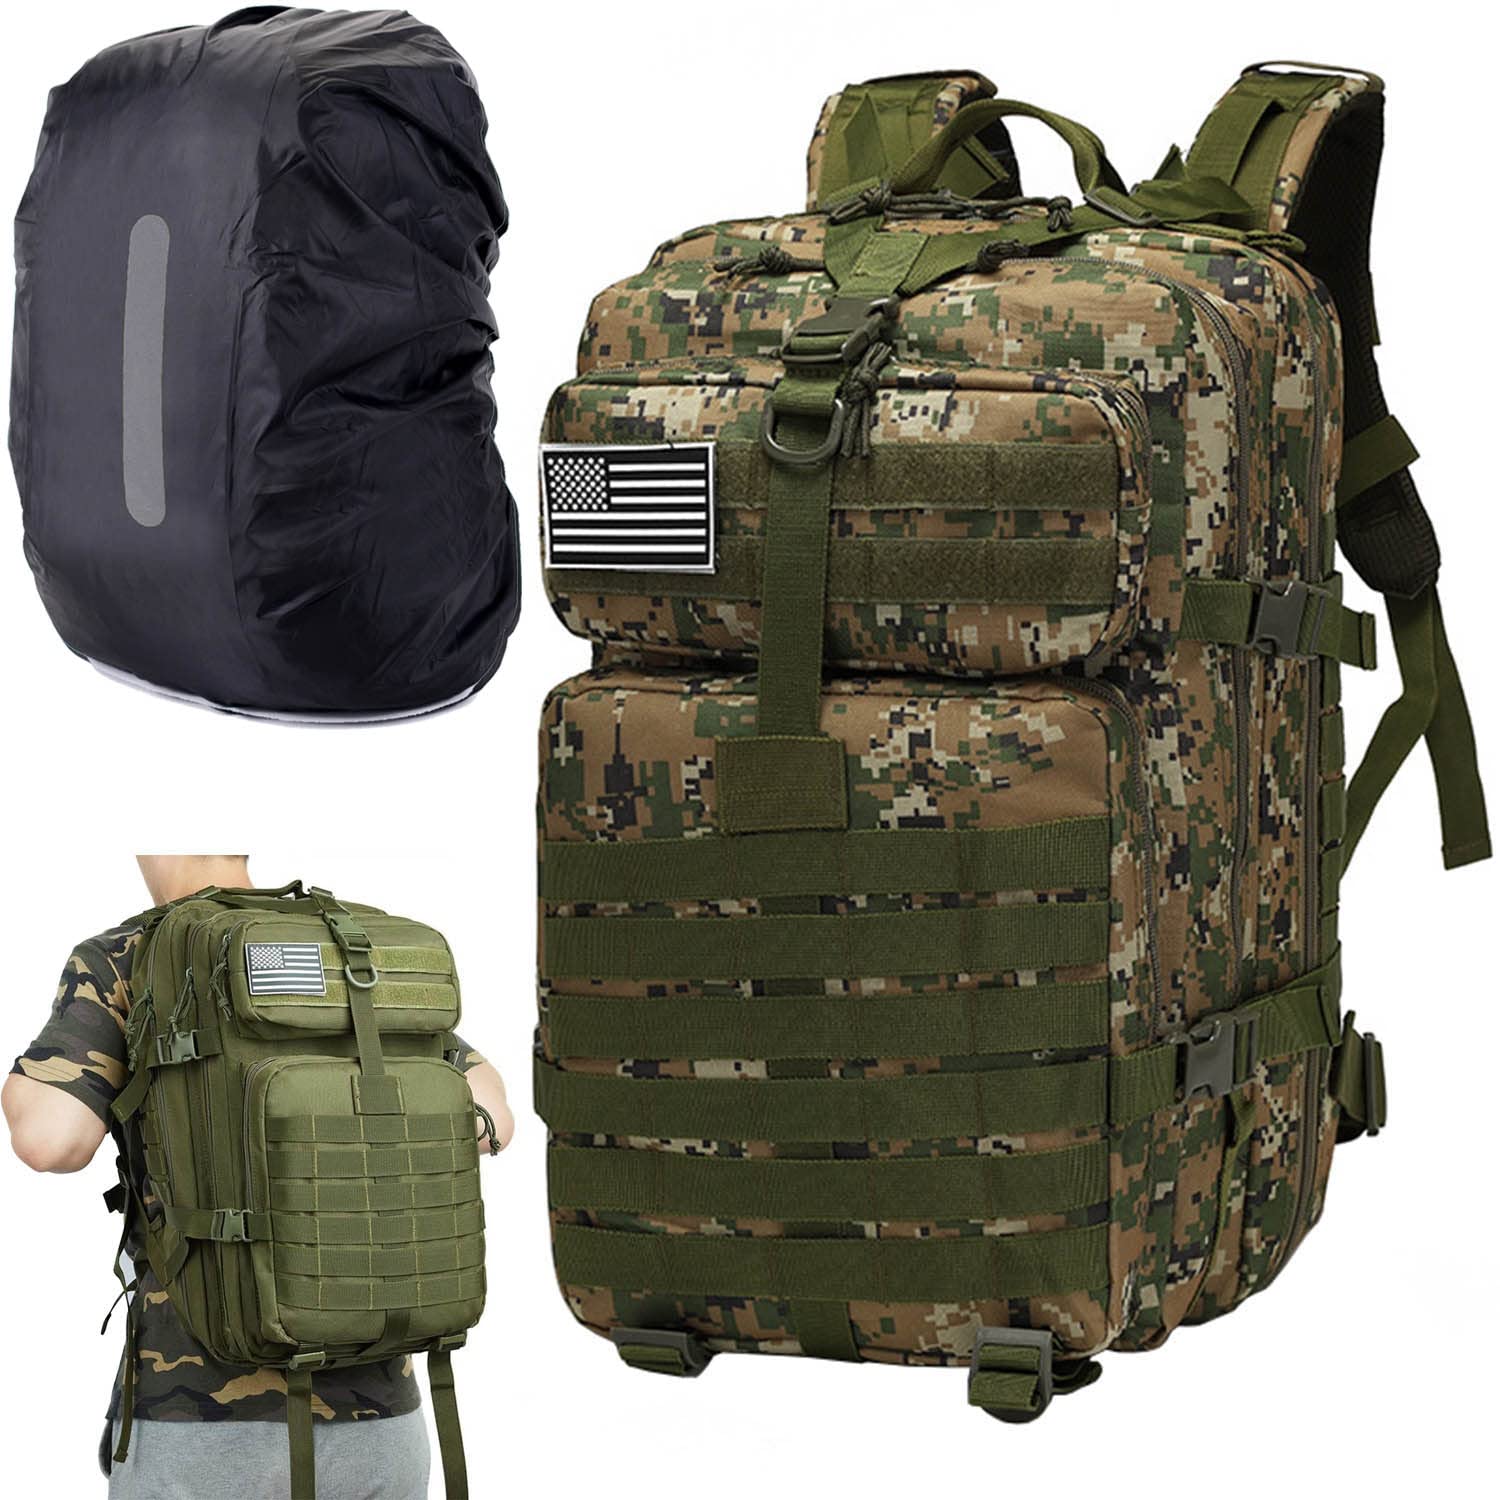 送料無料Psfghvz Military Tactical Backpack Hiking Assault Pack 40L Tactical Sling Bag Military Shoulder Sling Pack Assau